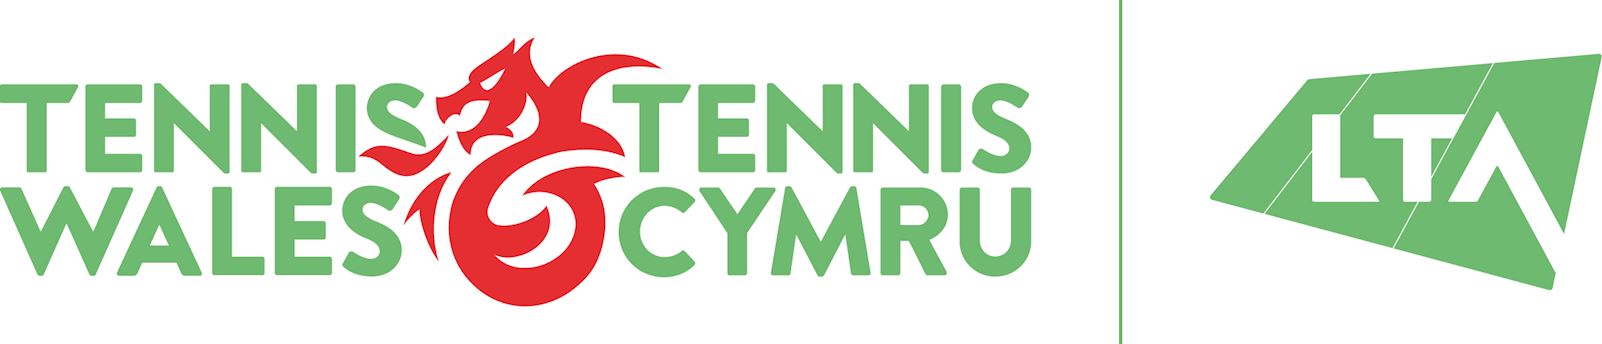 Tennis Wales Ltd